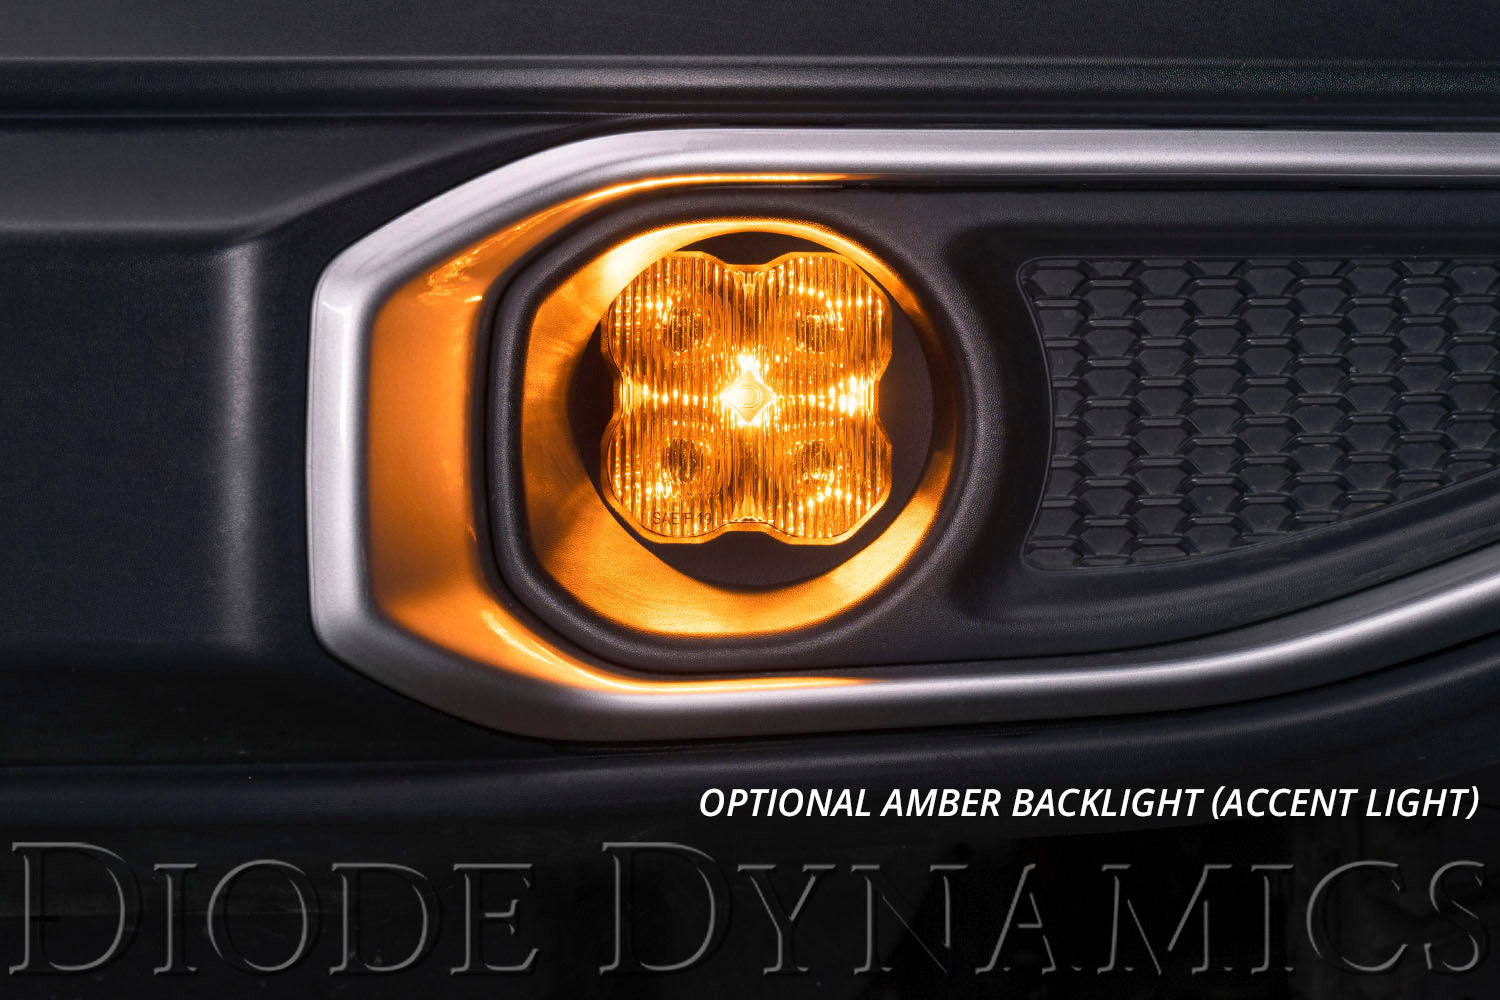 SS3 LED Fog Light Kit for 2008-2010 Toyota Highlander White SAE Fog Pro w/ Backlight Diode Dynamics